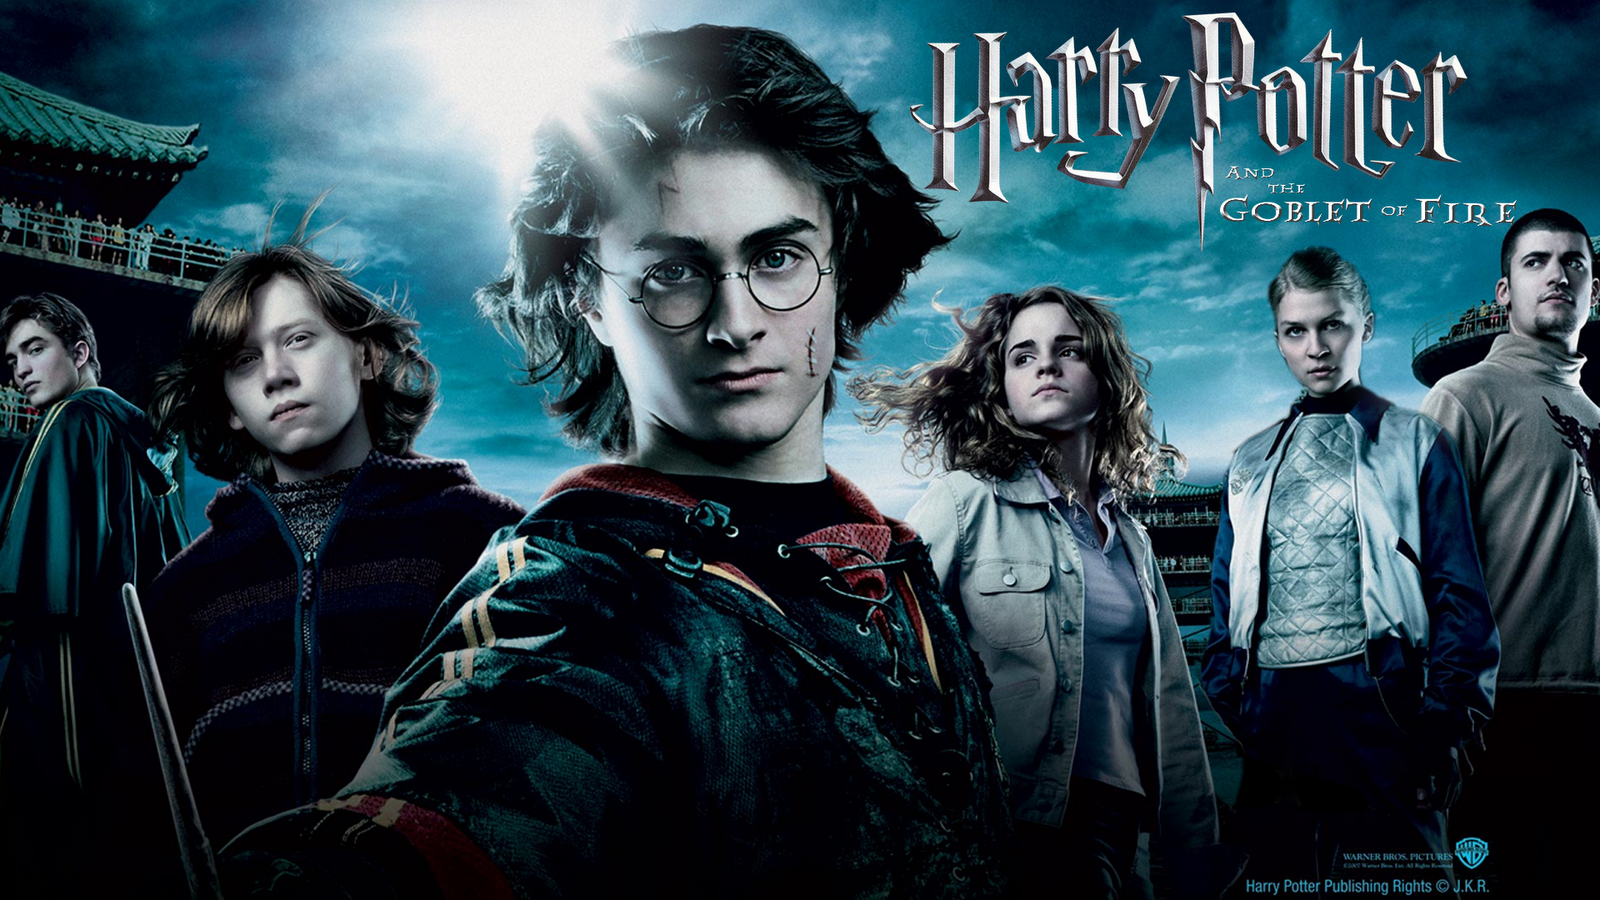 Quadro Harry Potter e o Cálice de Fogo